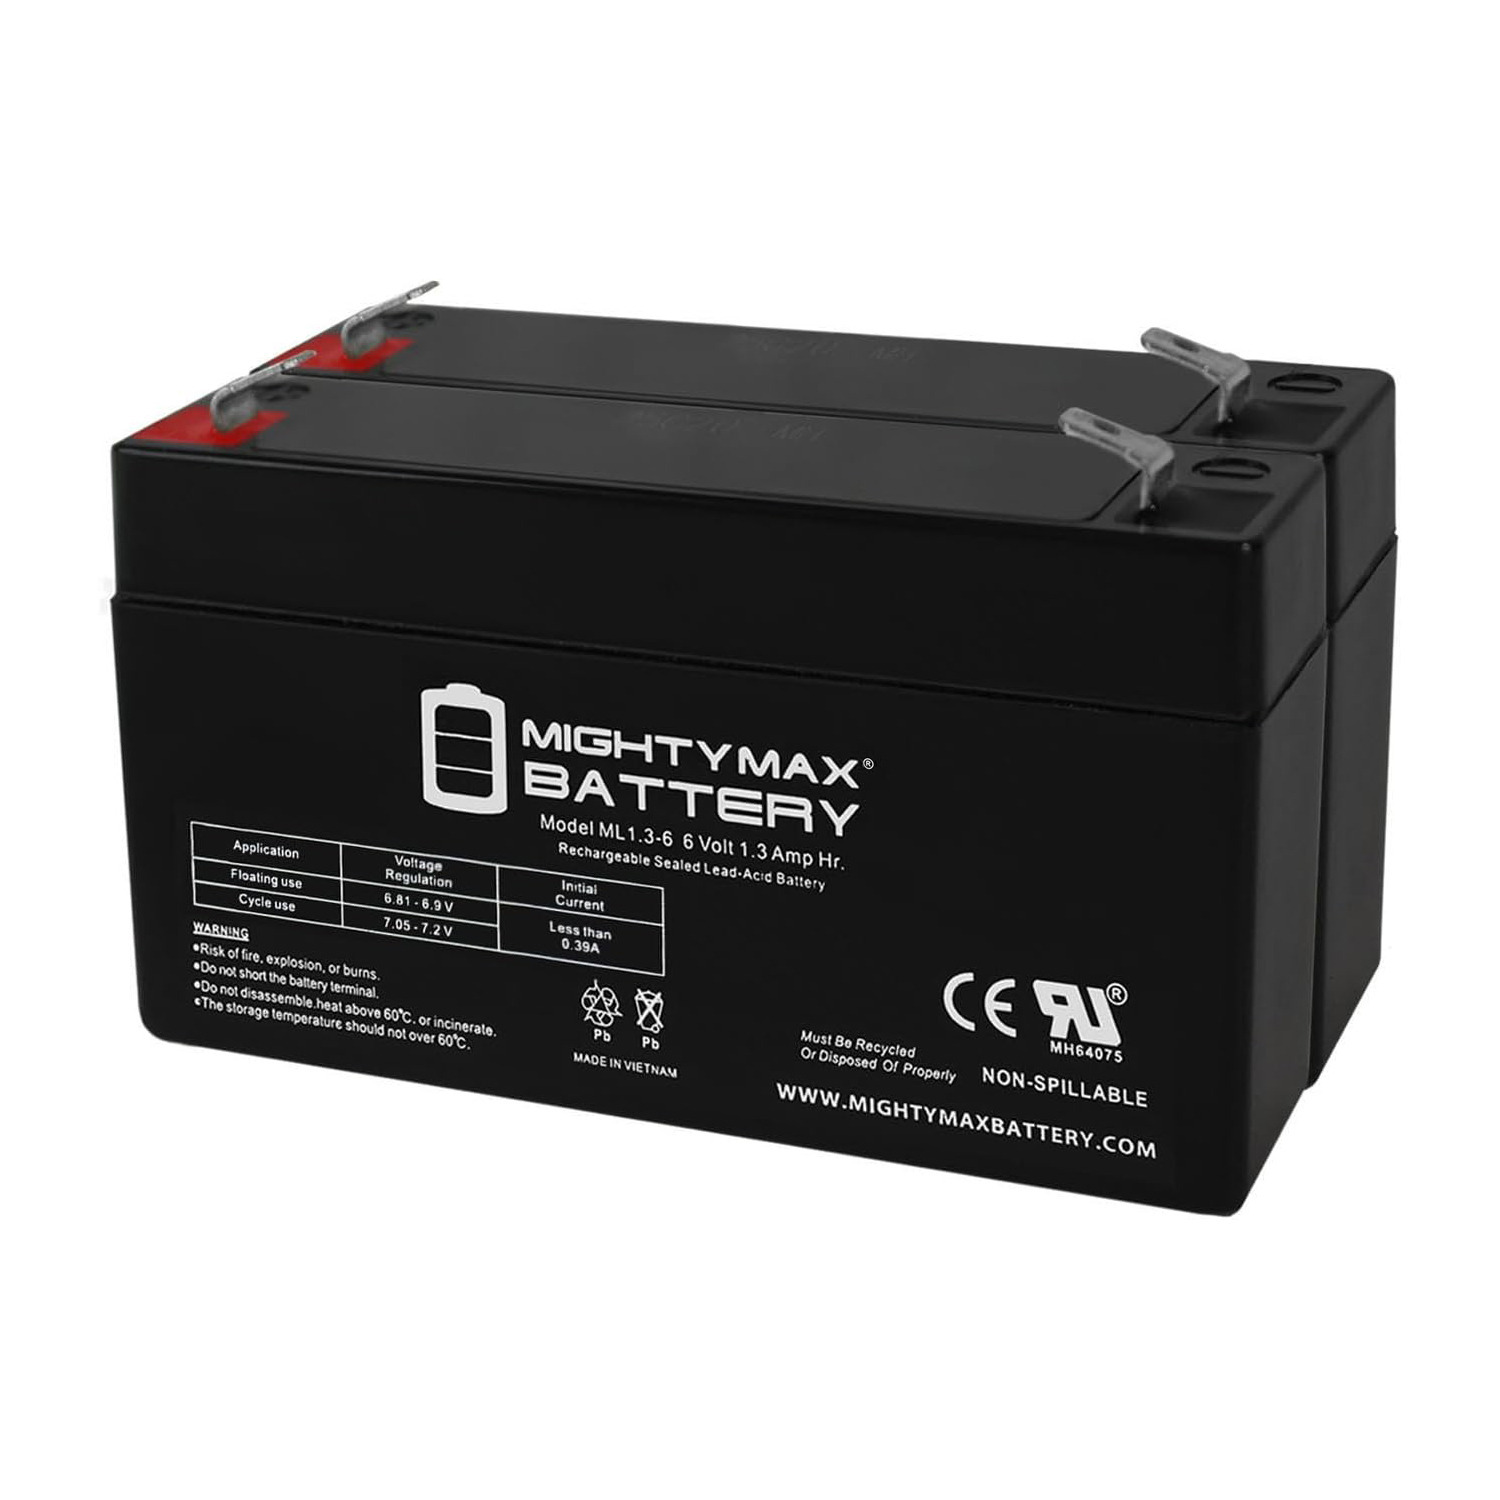 6V 1.3Ah Sonnenschein A506/1.2S Emergency Light Battery - 2 Pack